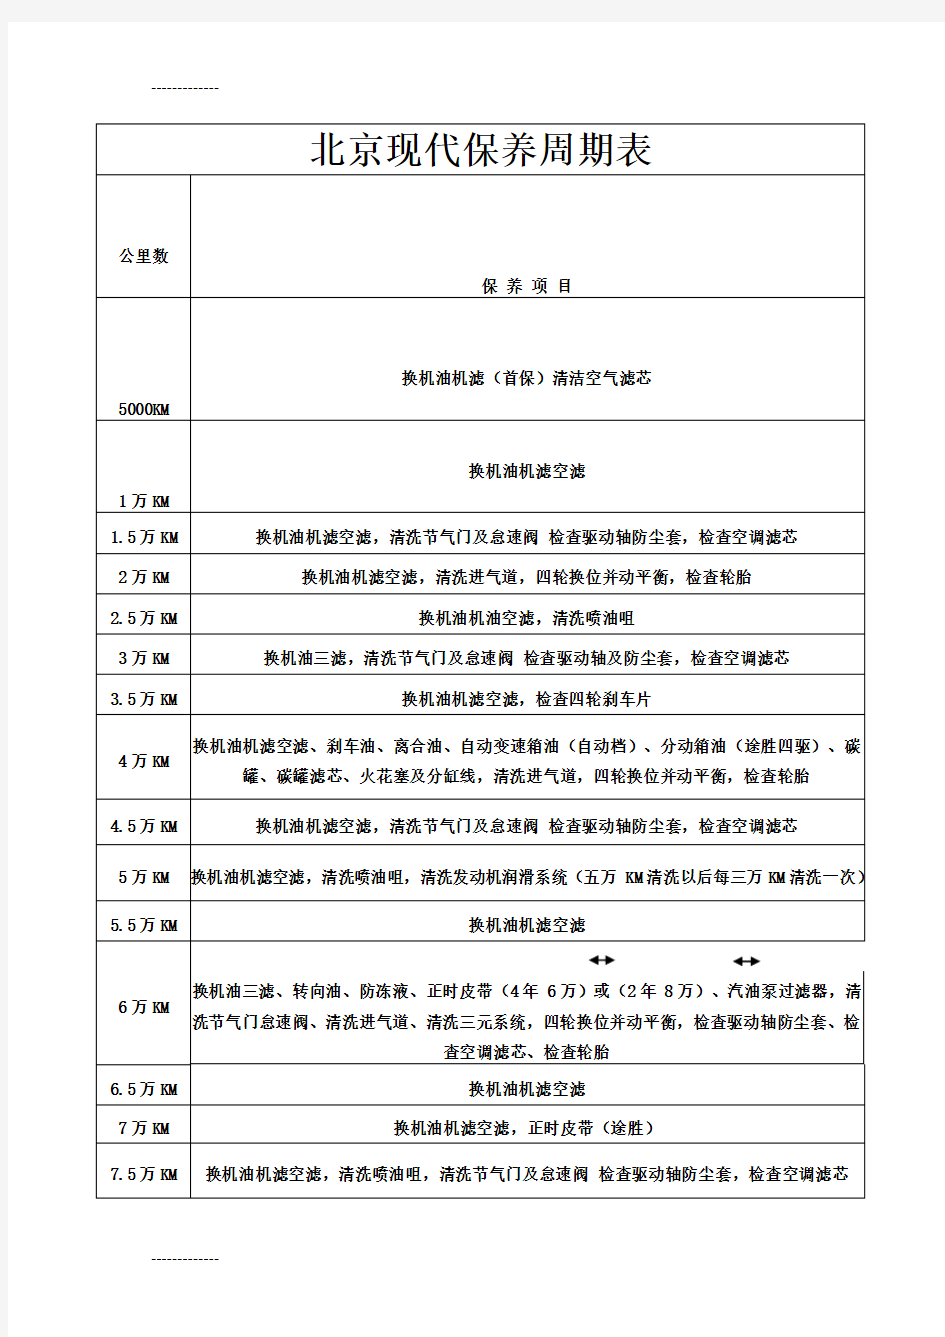 (整理)北京现代汽车保养周期表